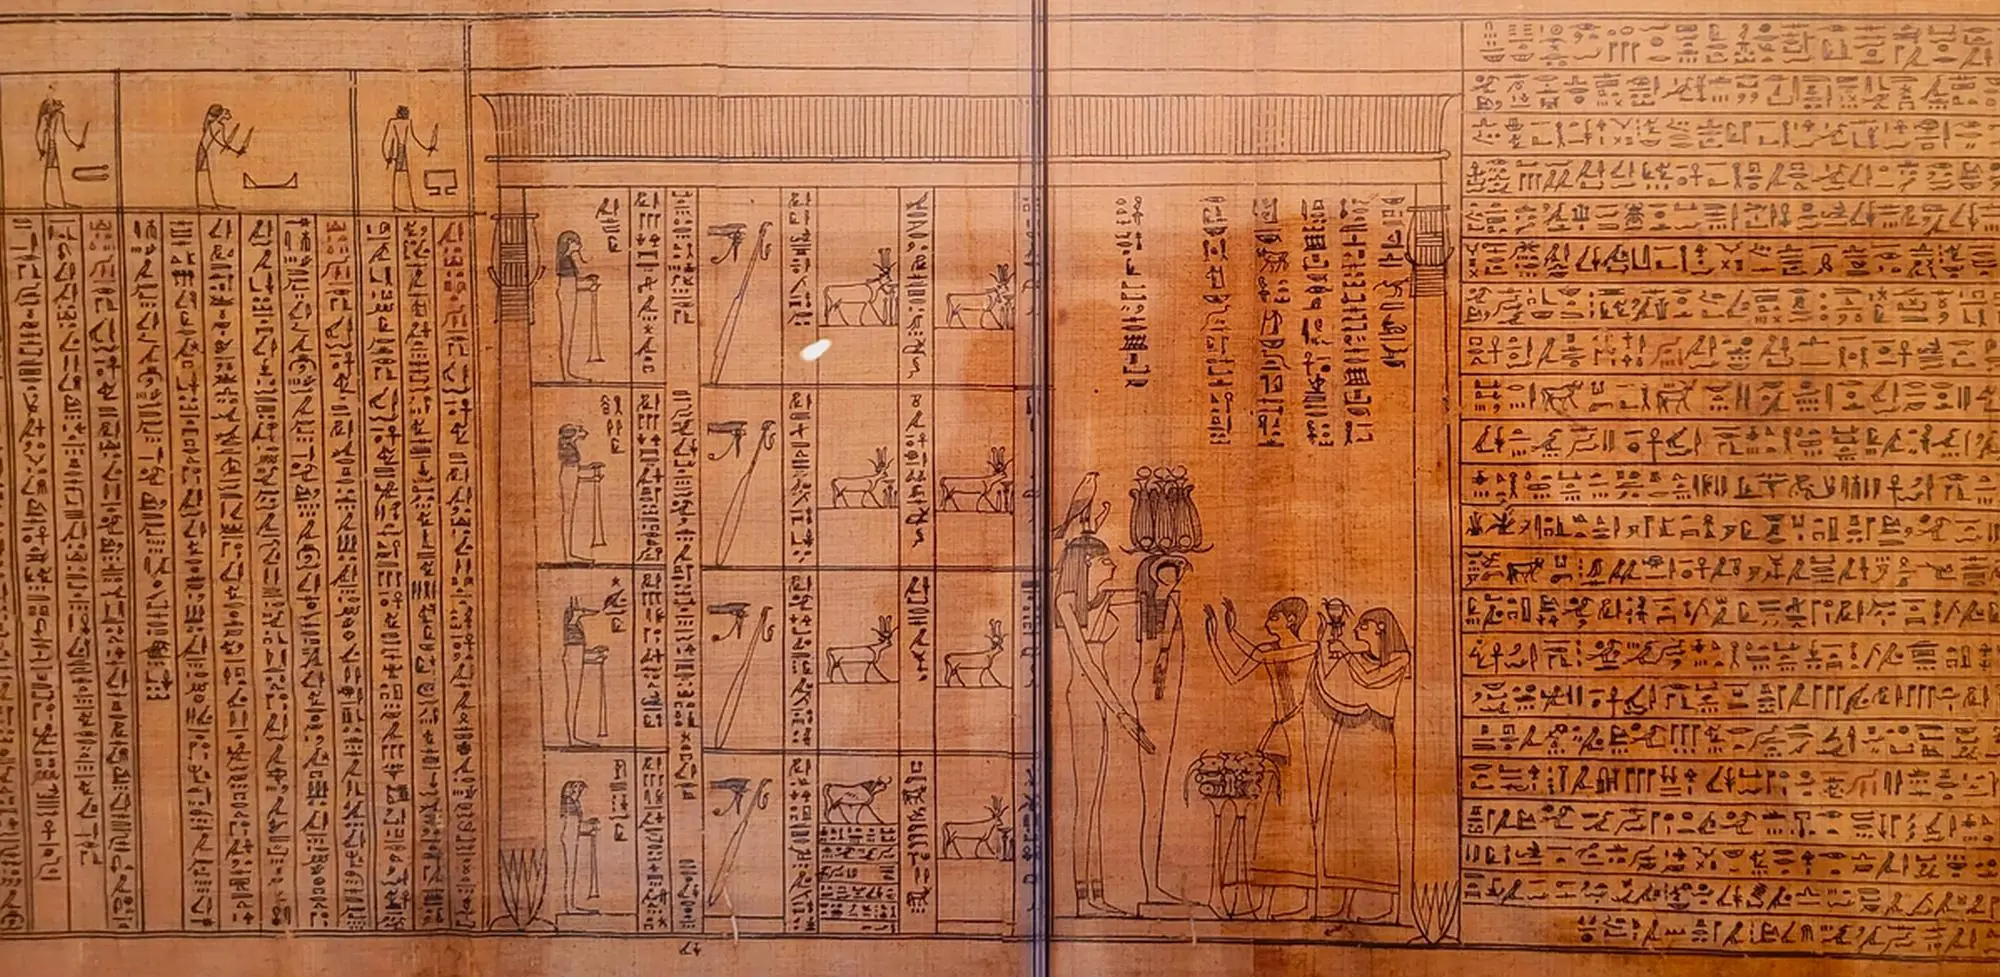 Informazioni sul Museo Egizio di Torino - Un particolare di un papiro egizio molto dettagliato conservato al Museo Egizio di Torino